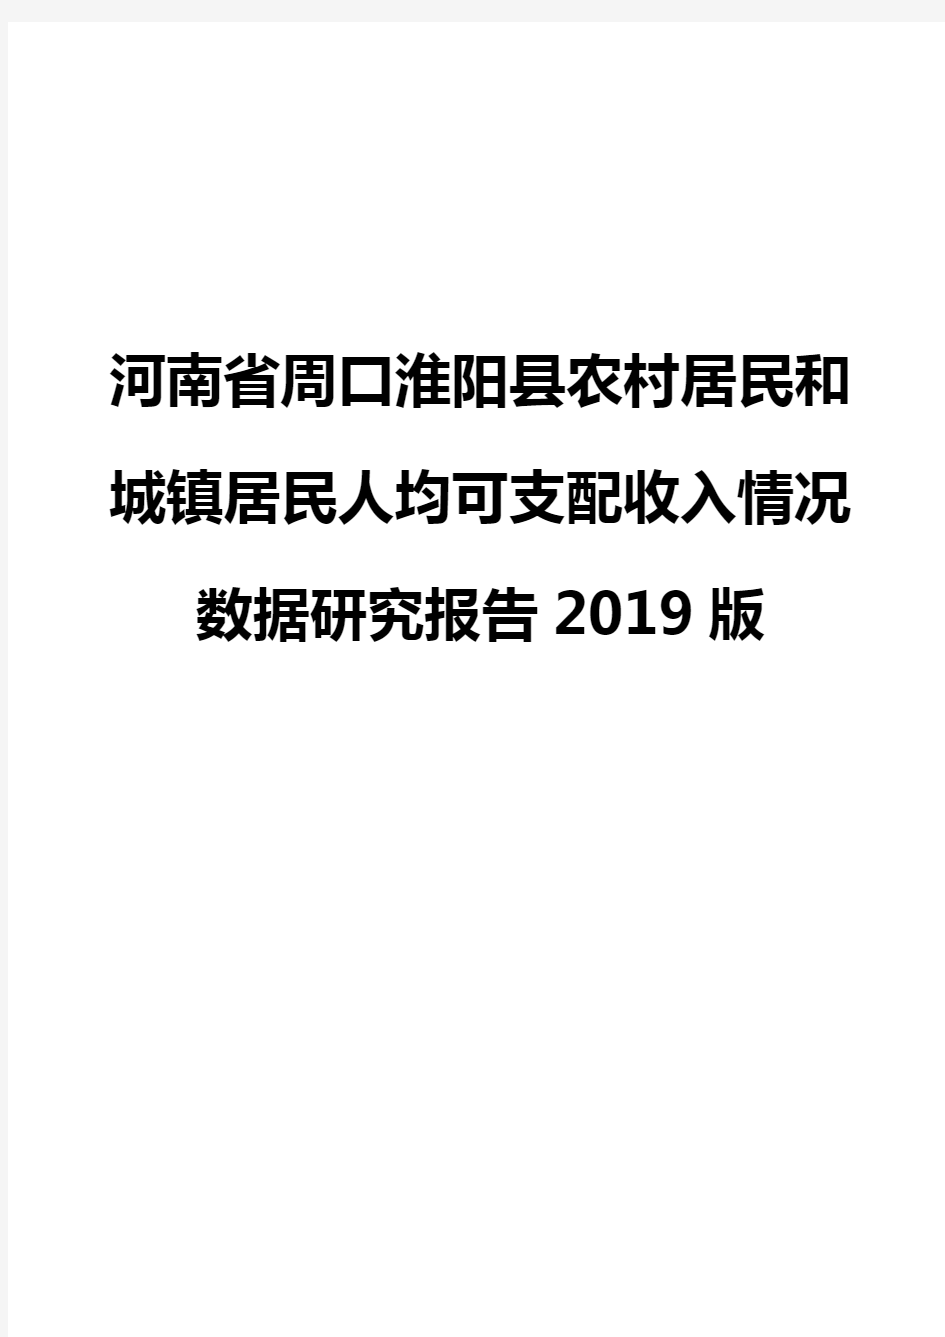 河南省周口淮阳县农村居民和城镇居民人均可支配收入情况数据研究报告2019版